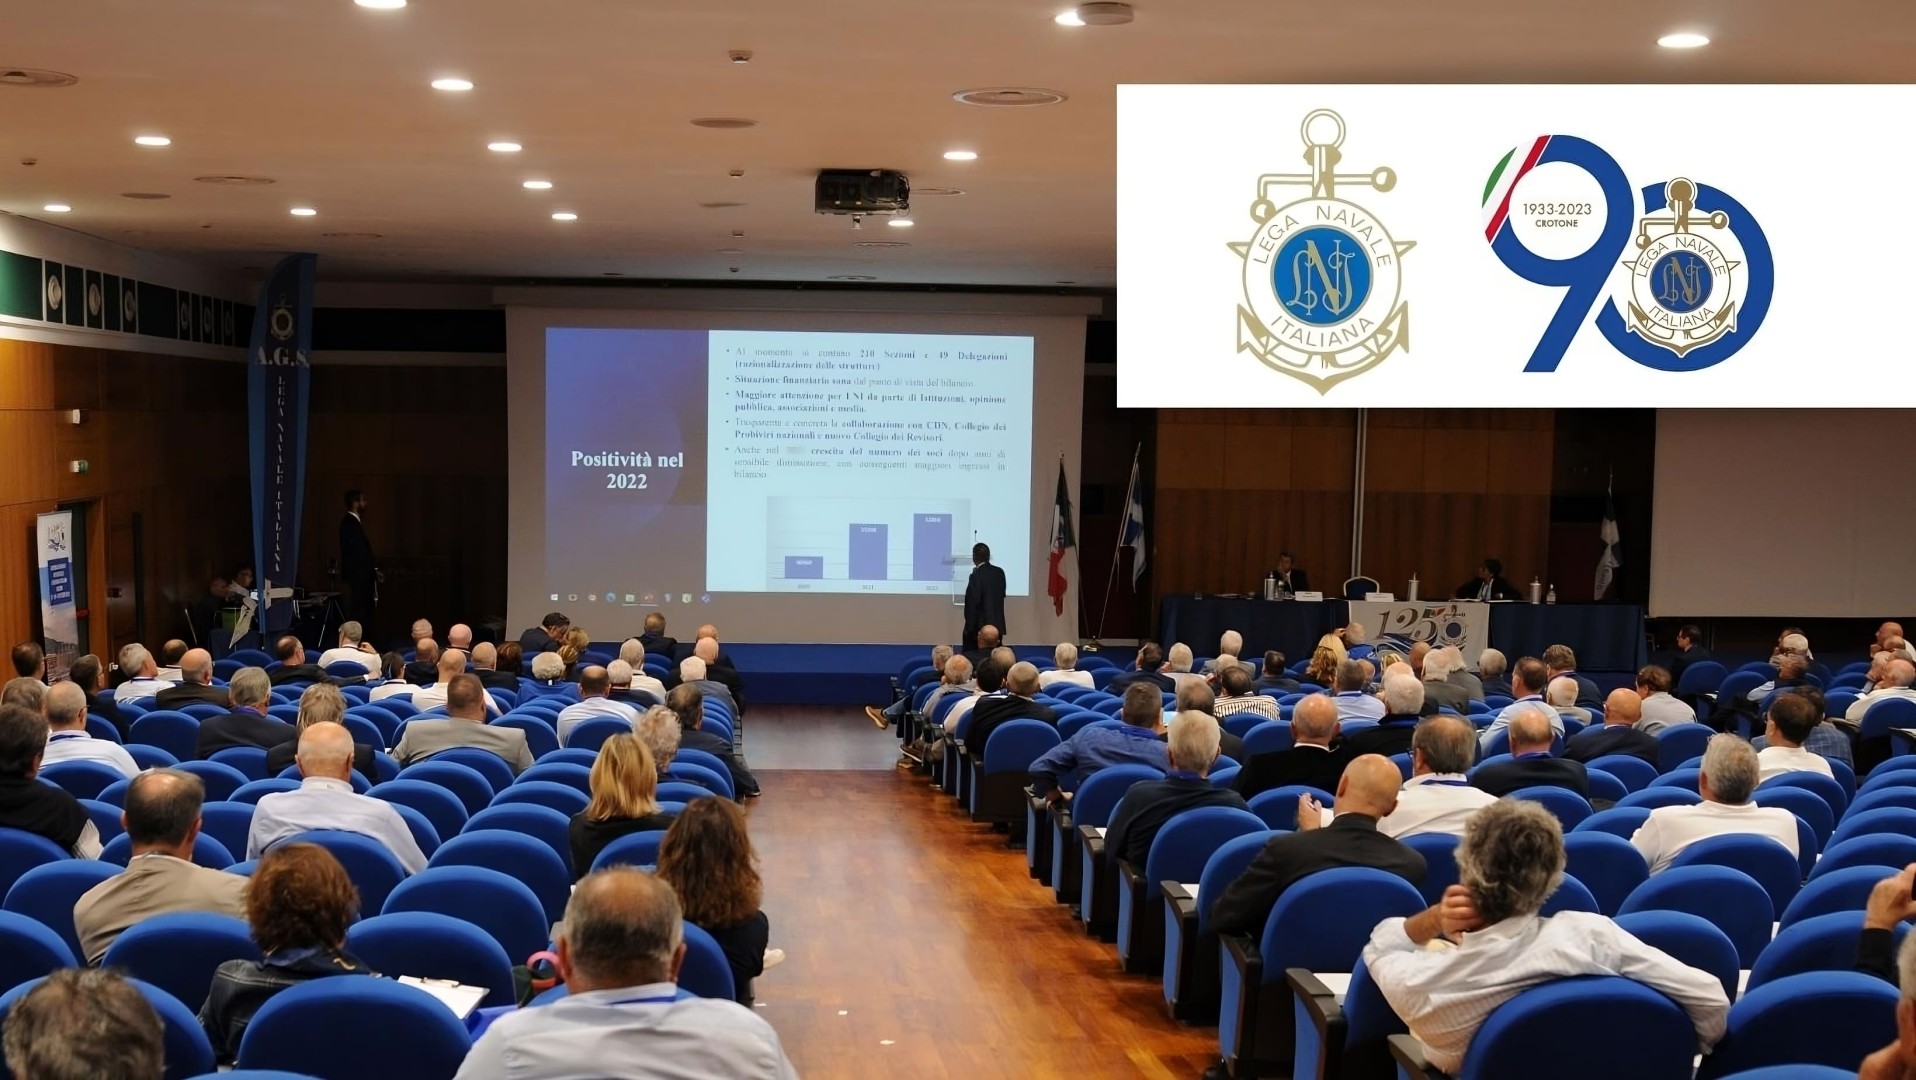 LNI, Crotone ospita l’Assemblea generale dei soci 2023